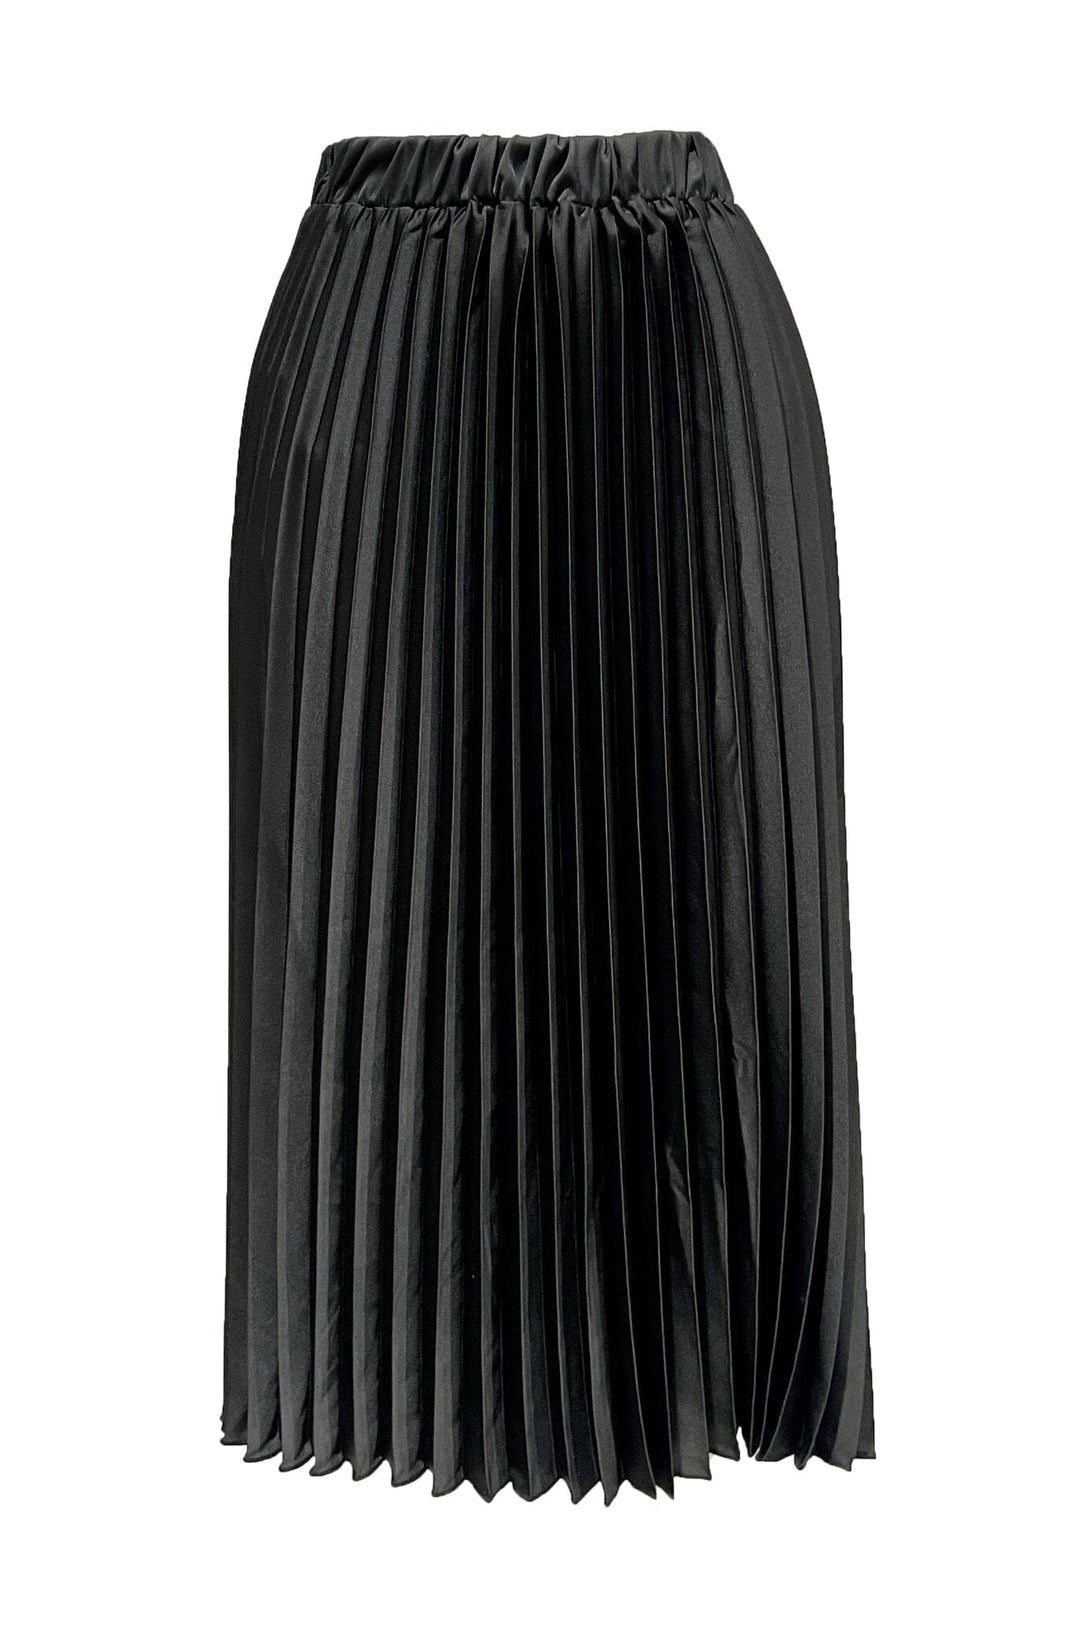 Whitley Pleated Skirt Black Skirt